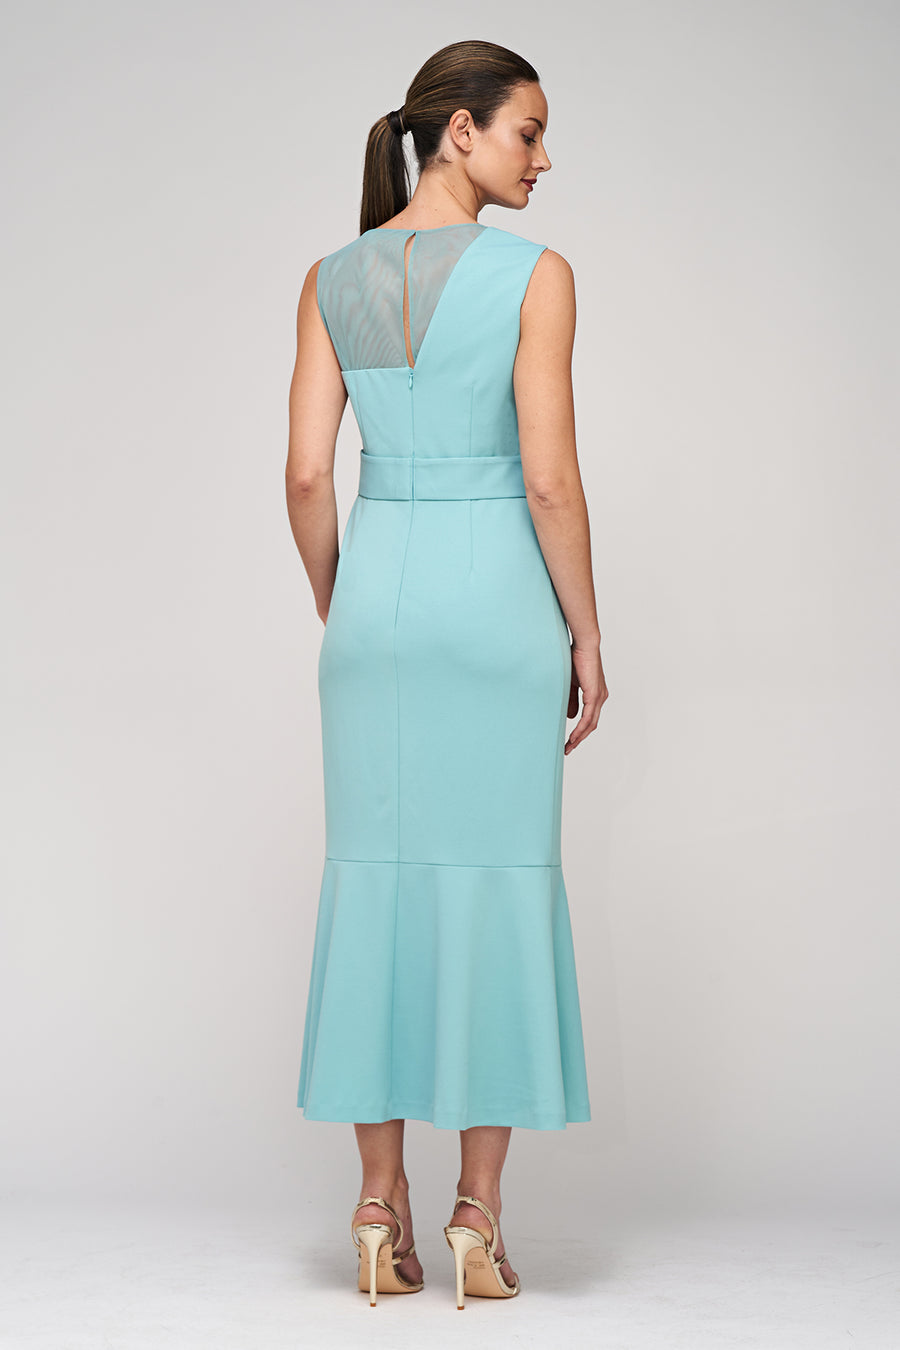 Joanna Bow Tea Length Dress